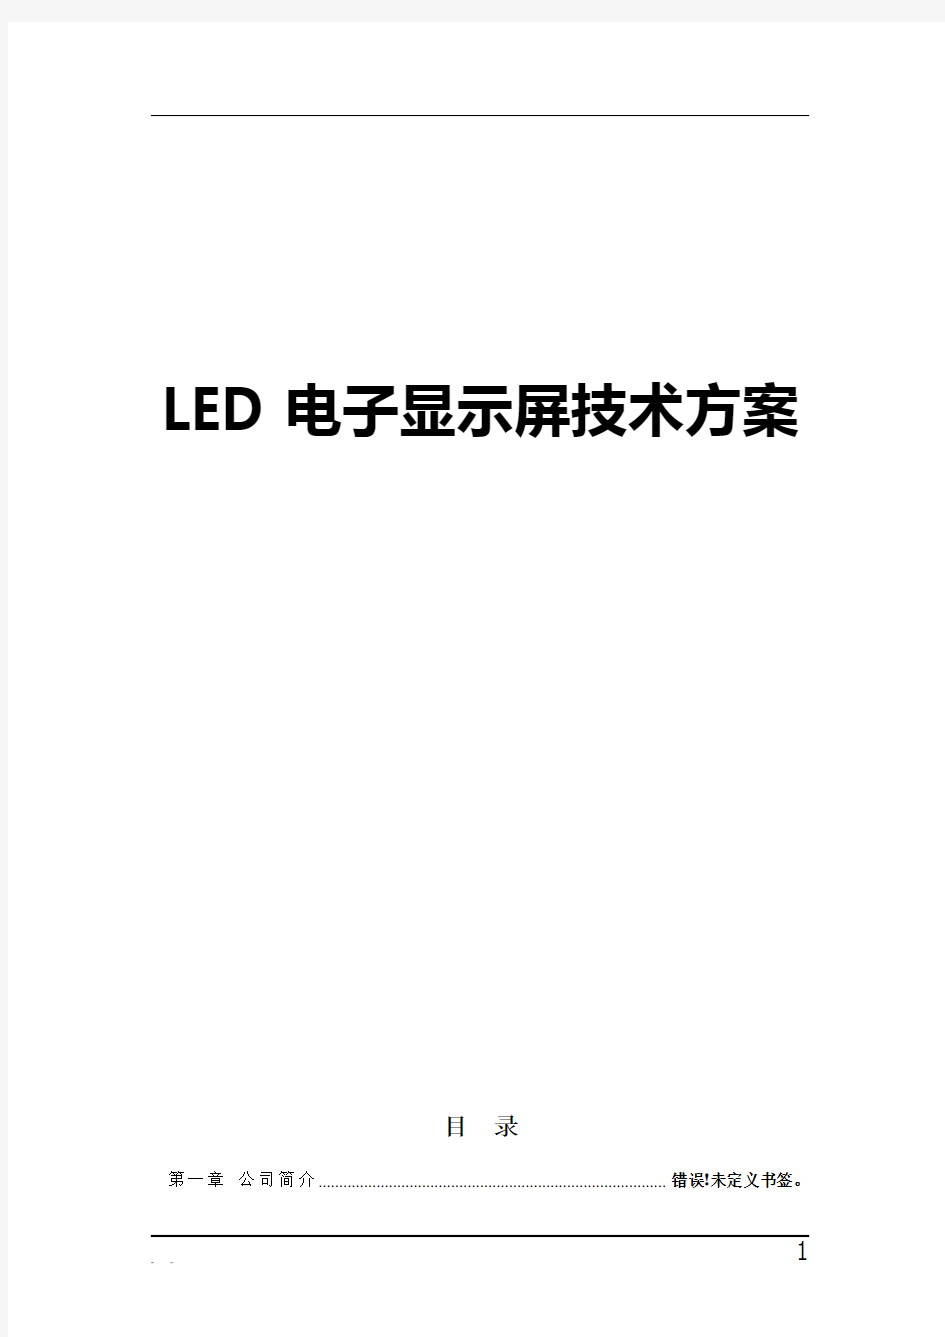 LED电子显示屏技术方案